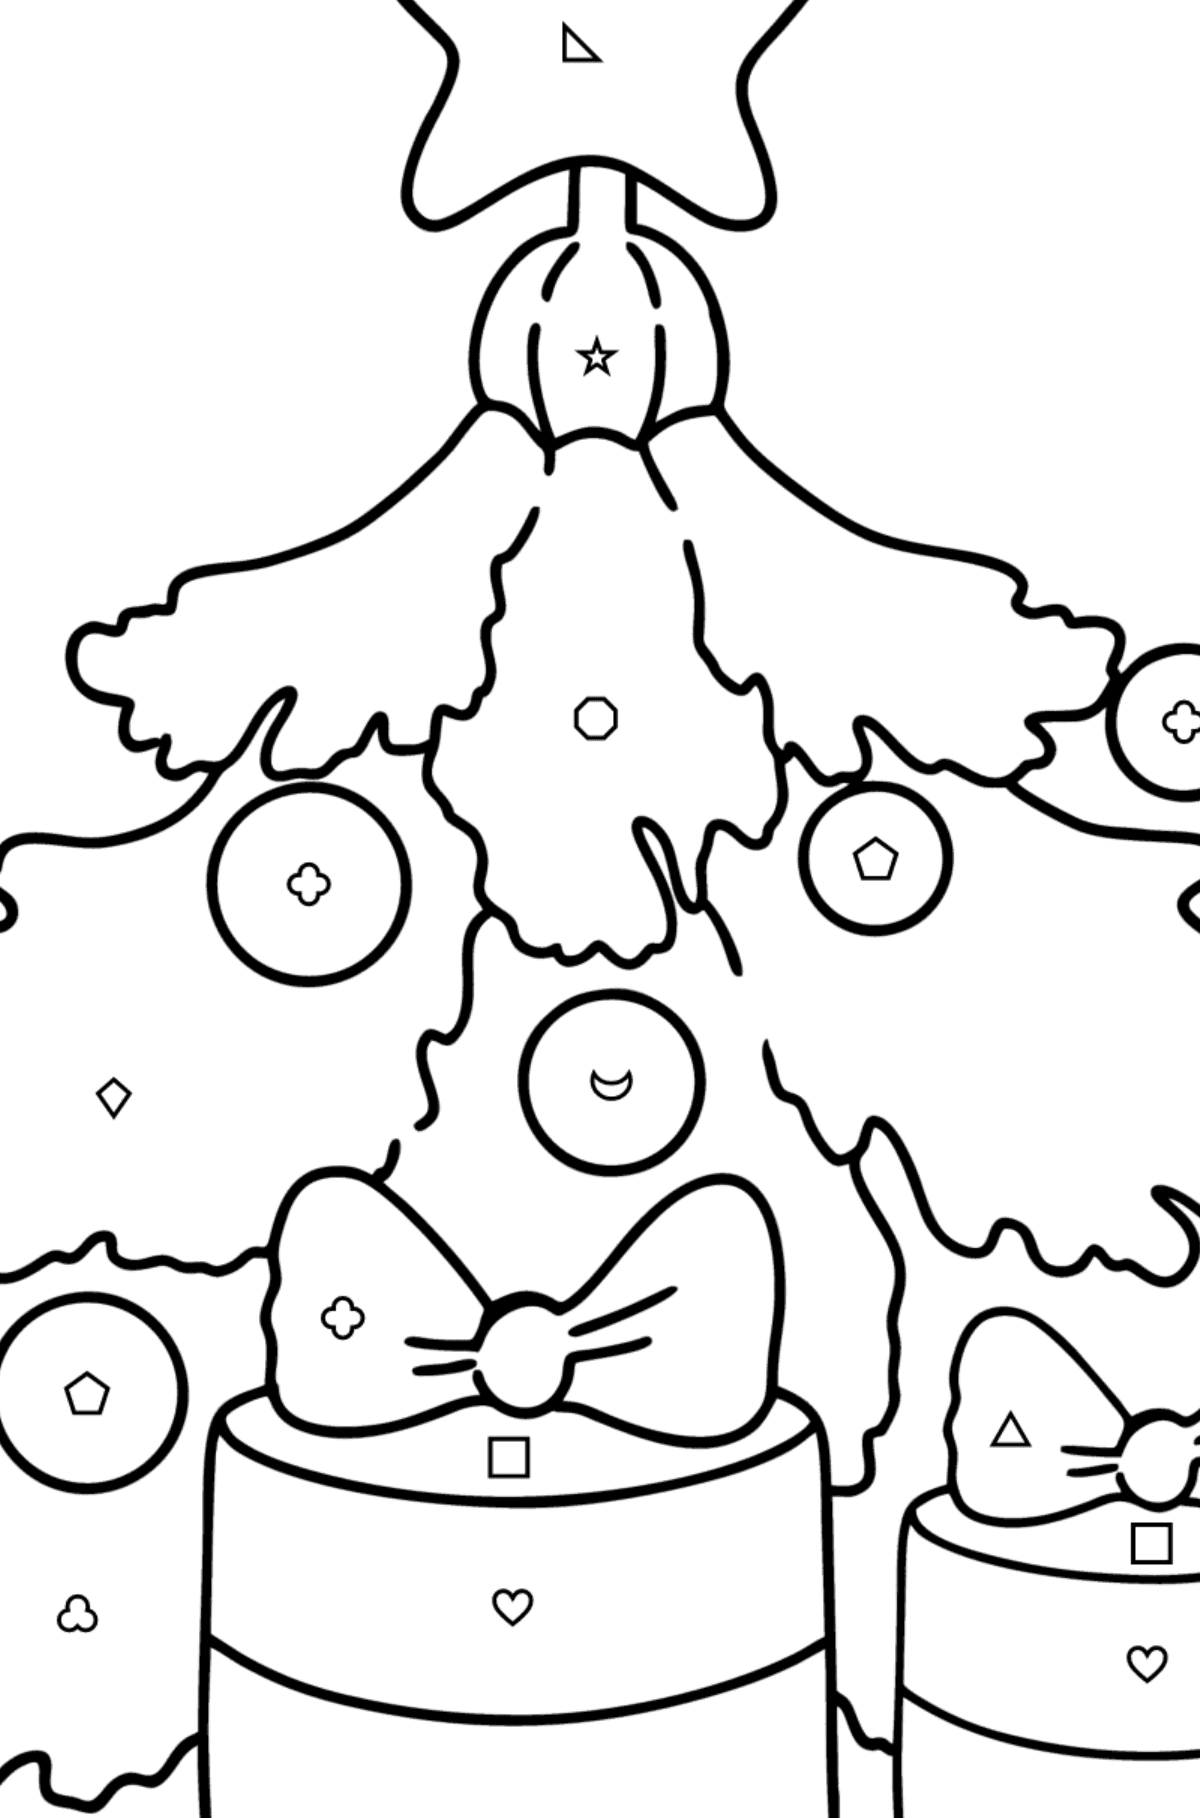 Desenho para colorir de Árvore de Natal e Presentes - Colorir por Formas Geométricas para Crianças